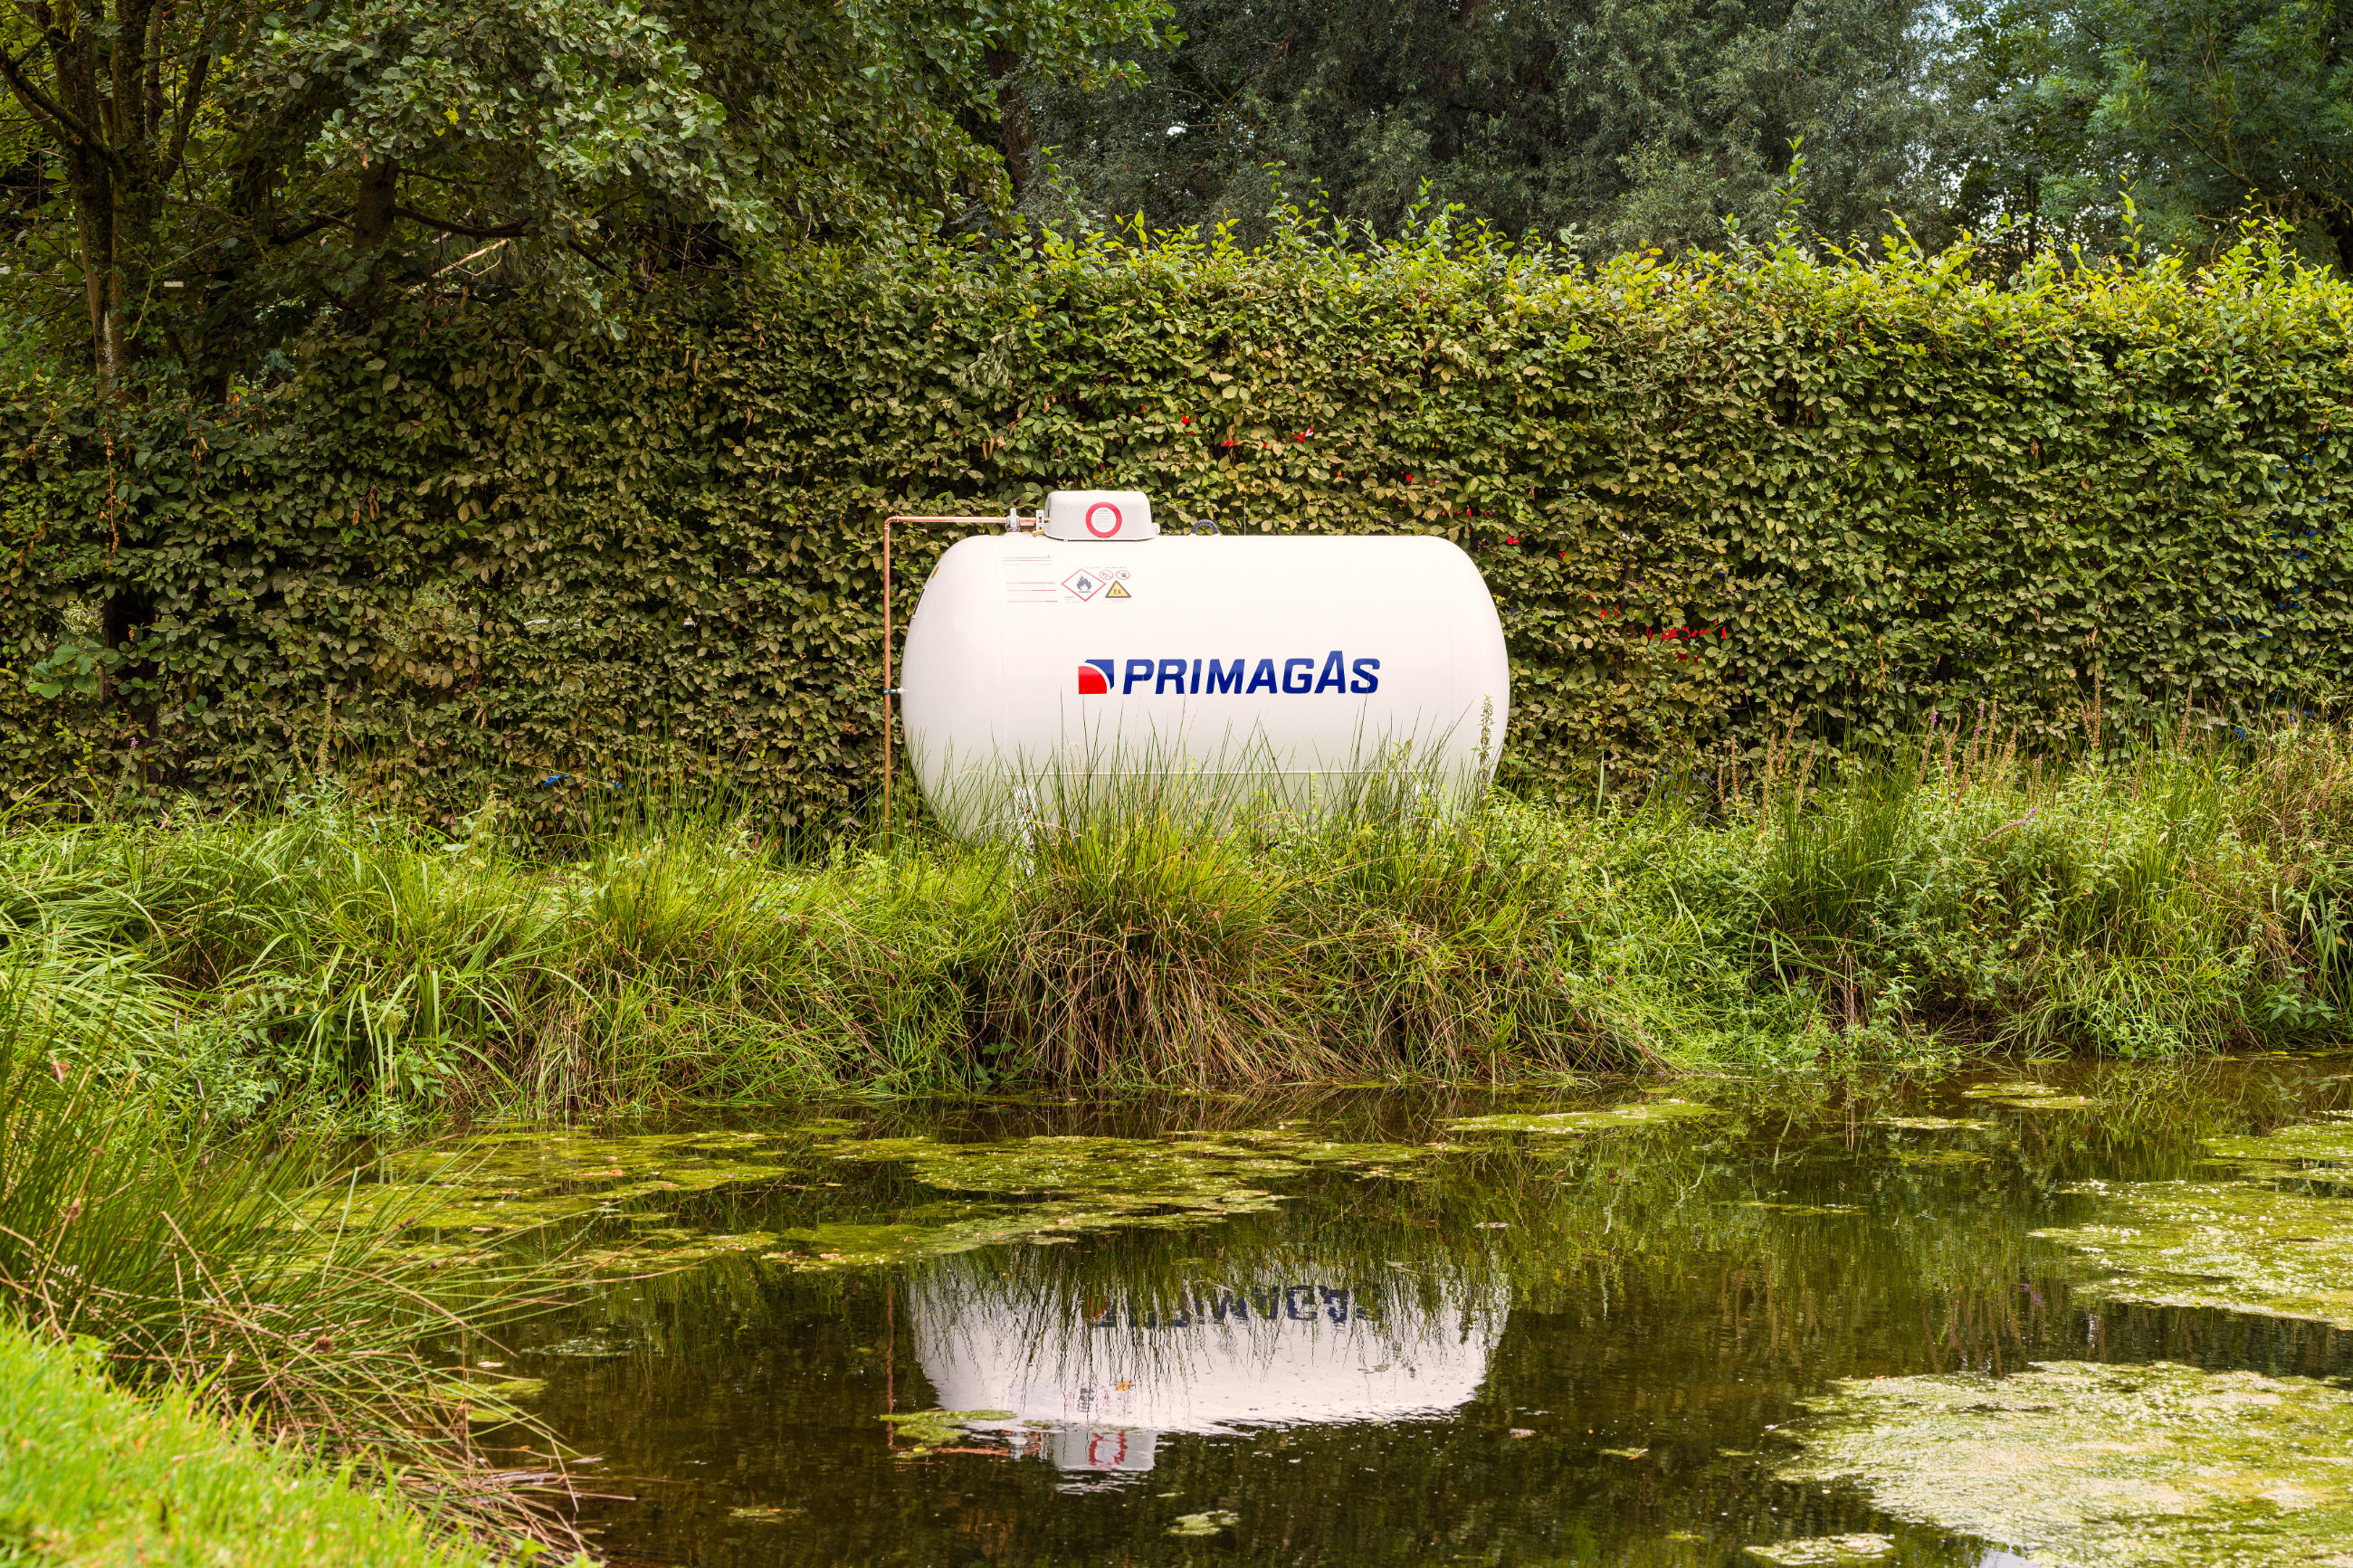 PRIMAGAS - Tank, Flüssiggasbehälter an einem See